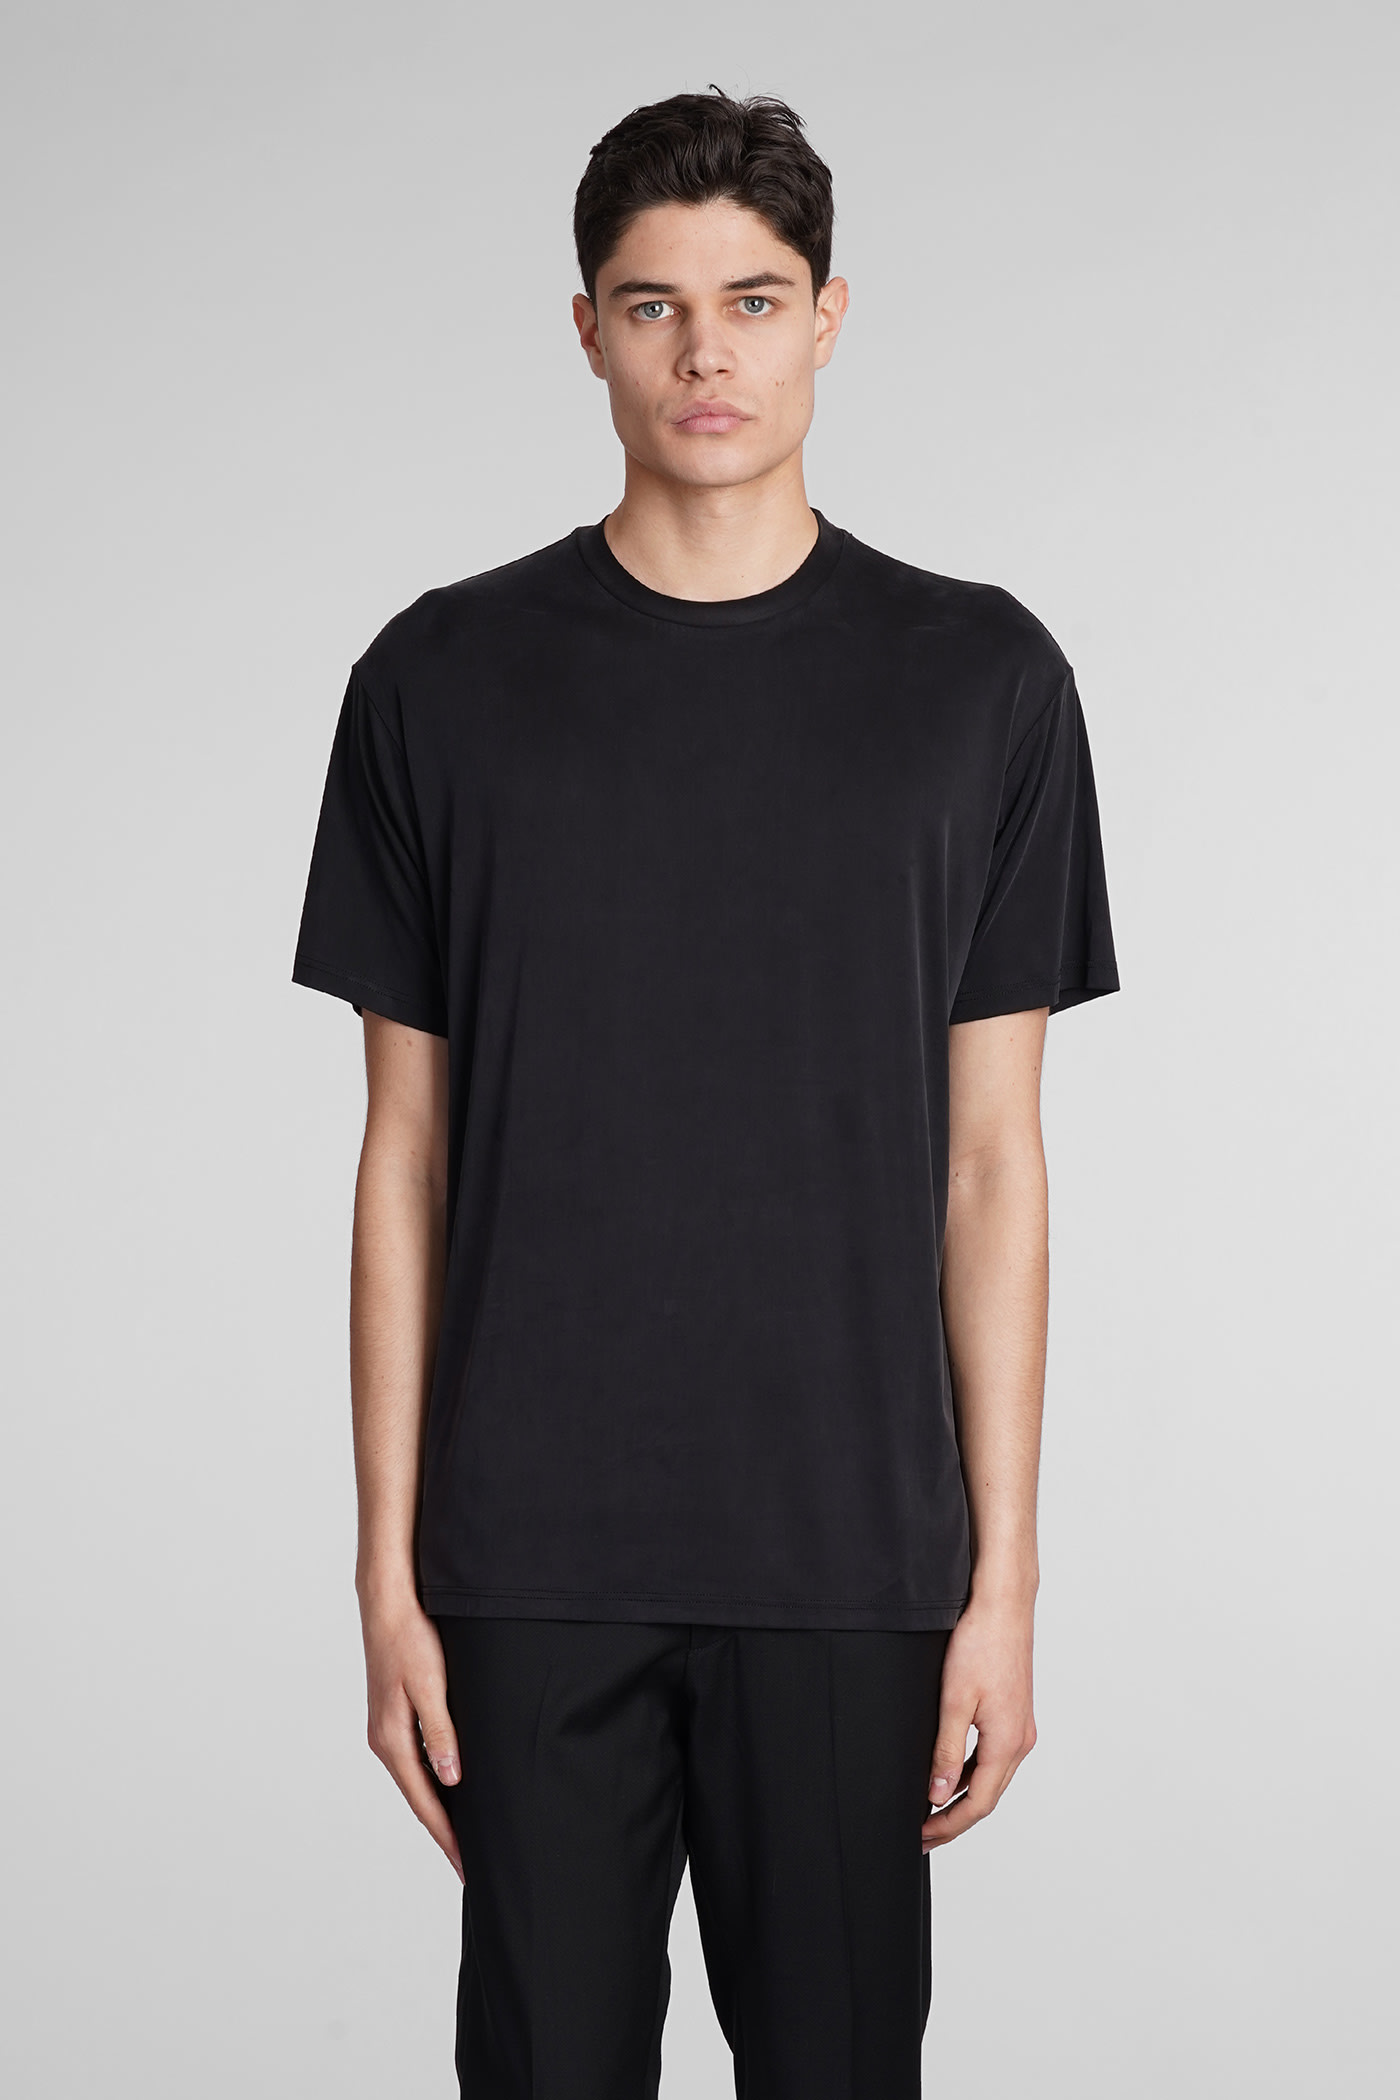 B224 T-shirt In Black Polyamide Polyester